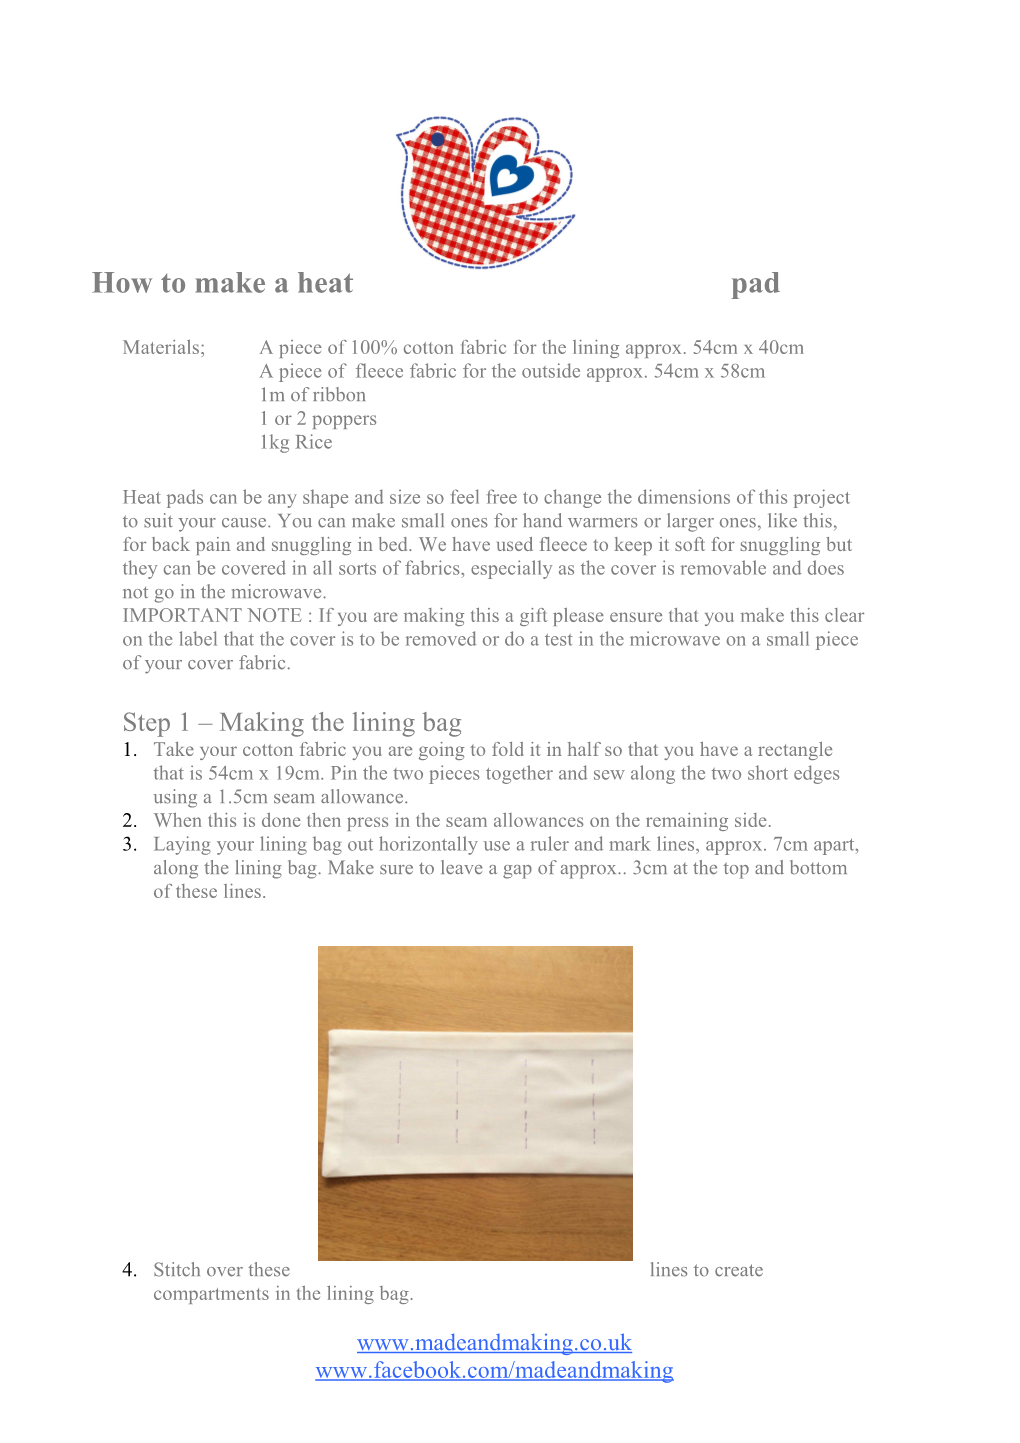 How to Make a Heatpad